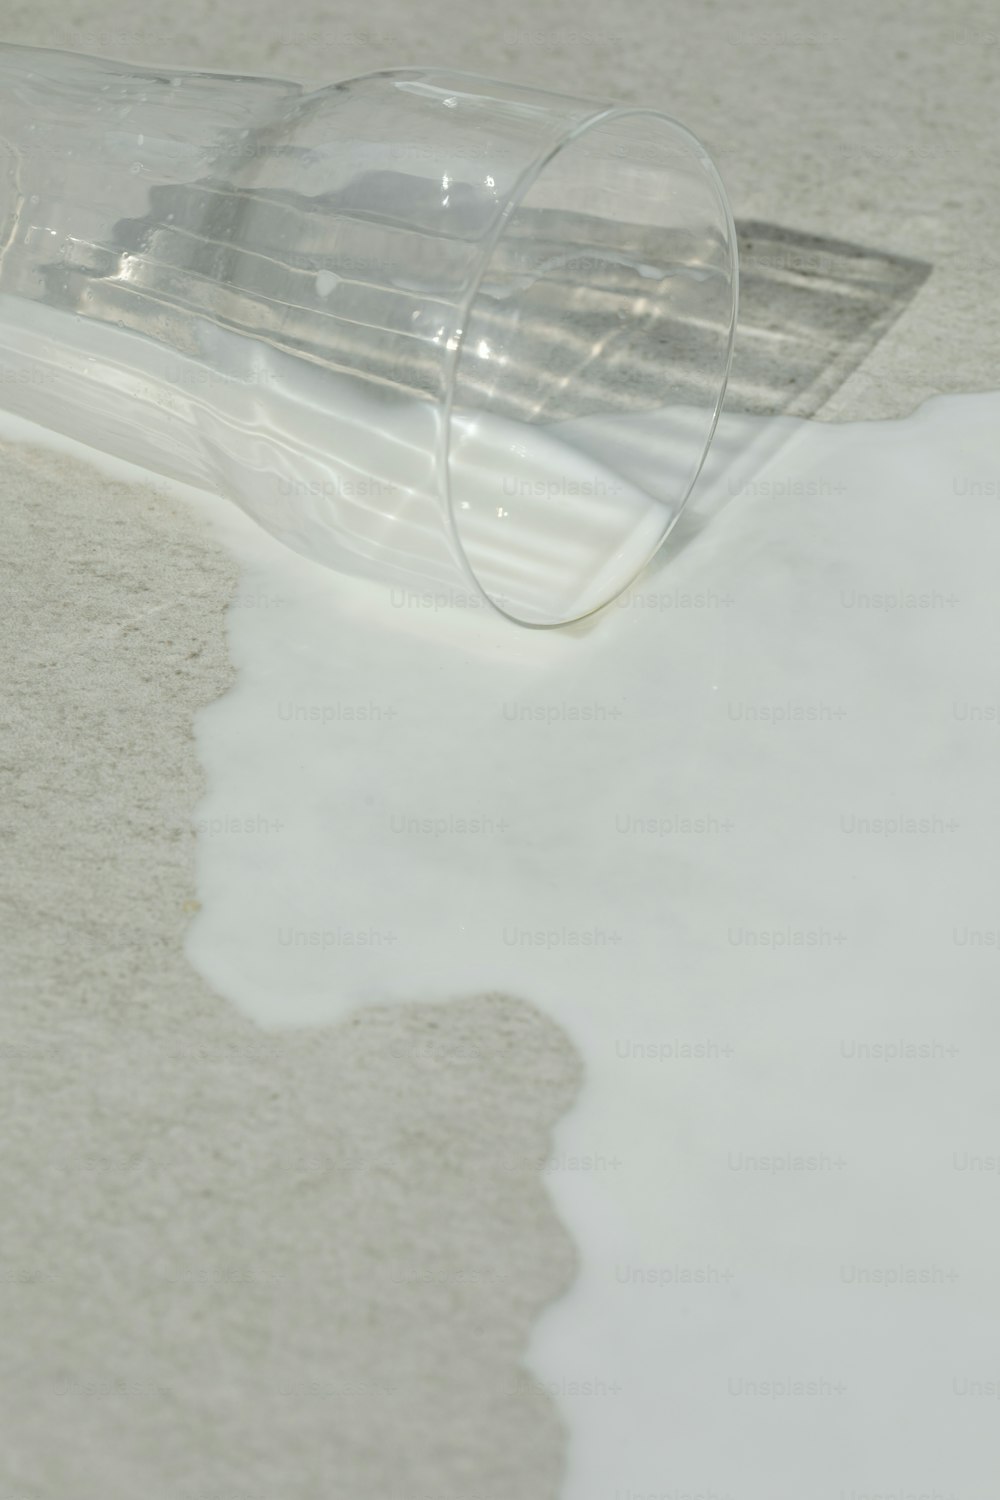 Un tubo de plástico transparente sentado encima de un piso blanco